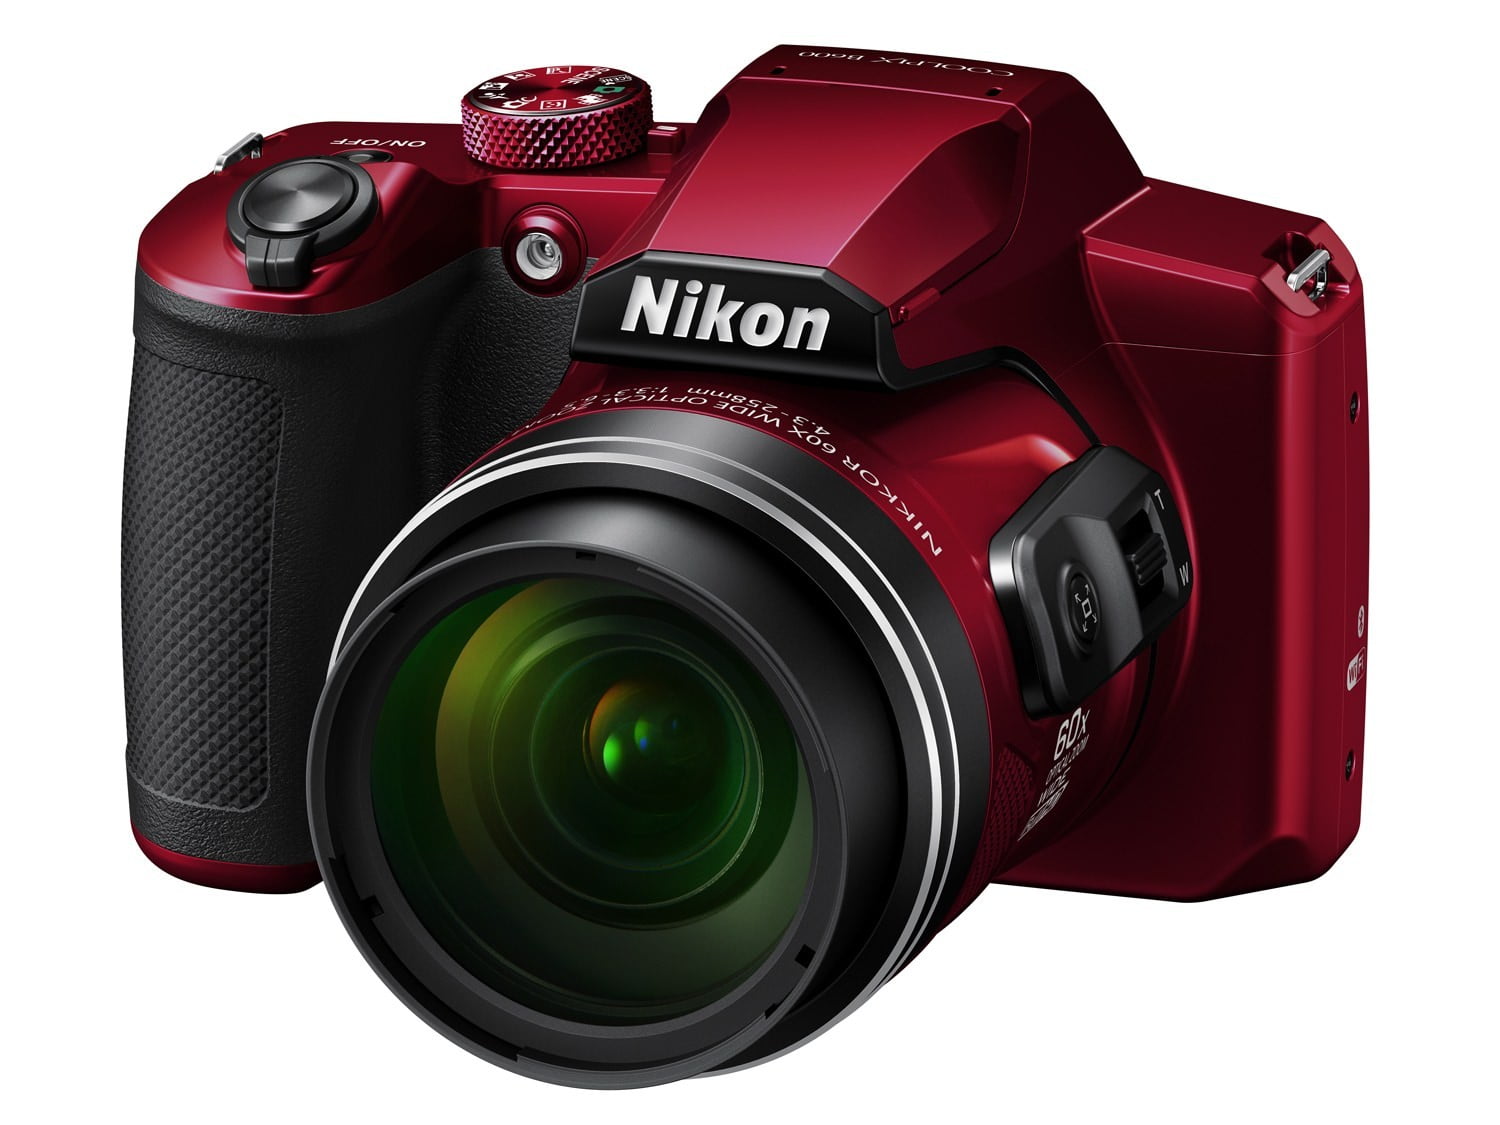 Nikon COOLPIX B600 Digital Camera (Red) VQA091EA 